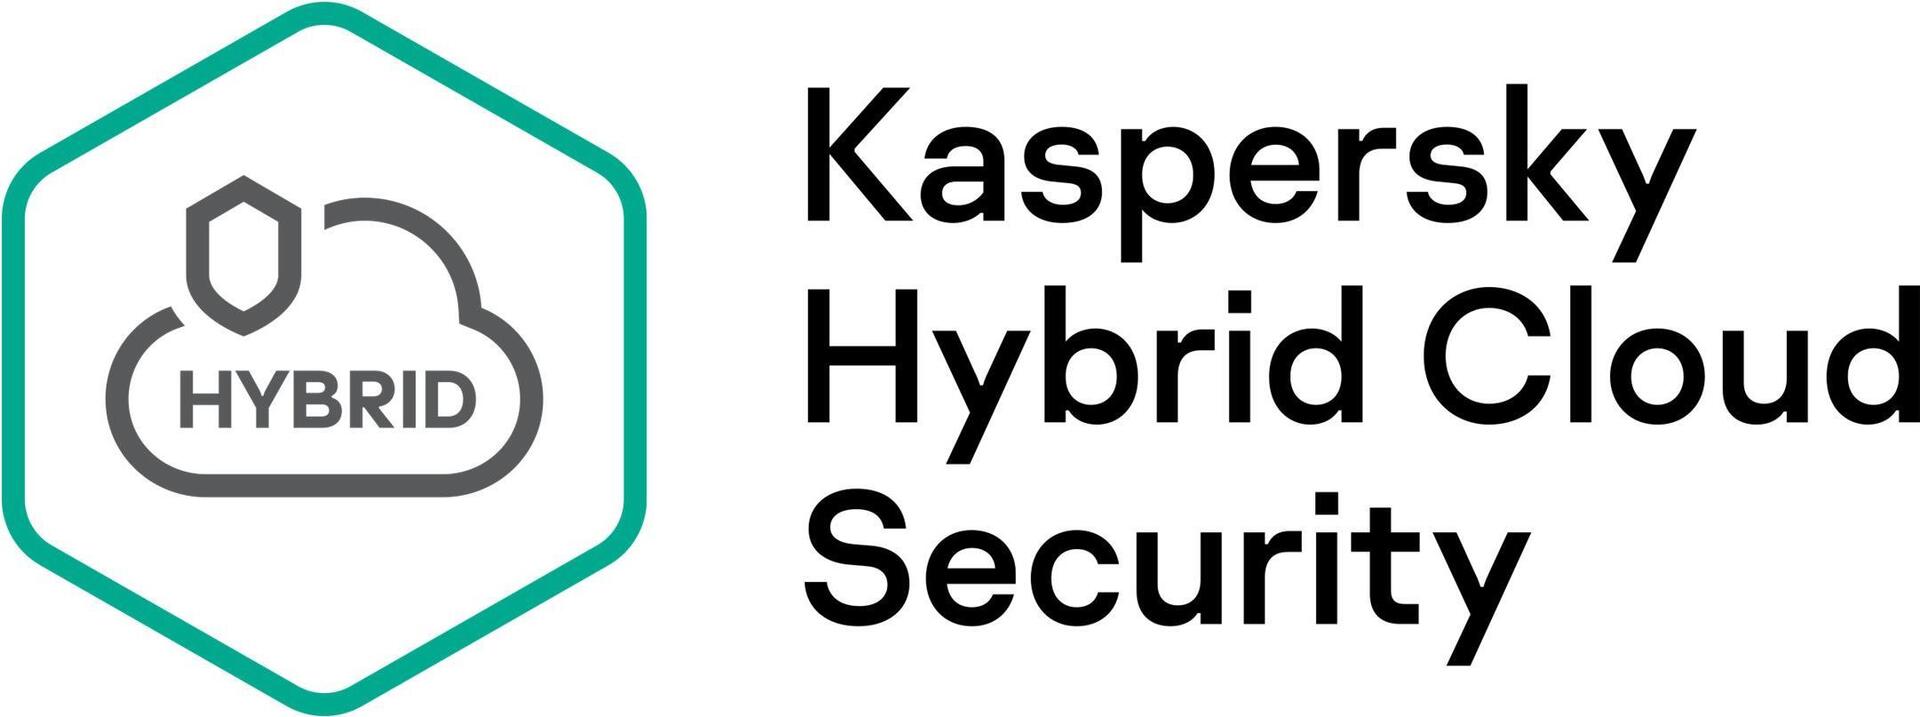 KASPERSKY Hybrid Cloud Security Enterprise CPU European Edition 1 - CPU 3 year Renewal Plus License (KL4553XAAT9)